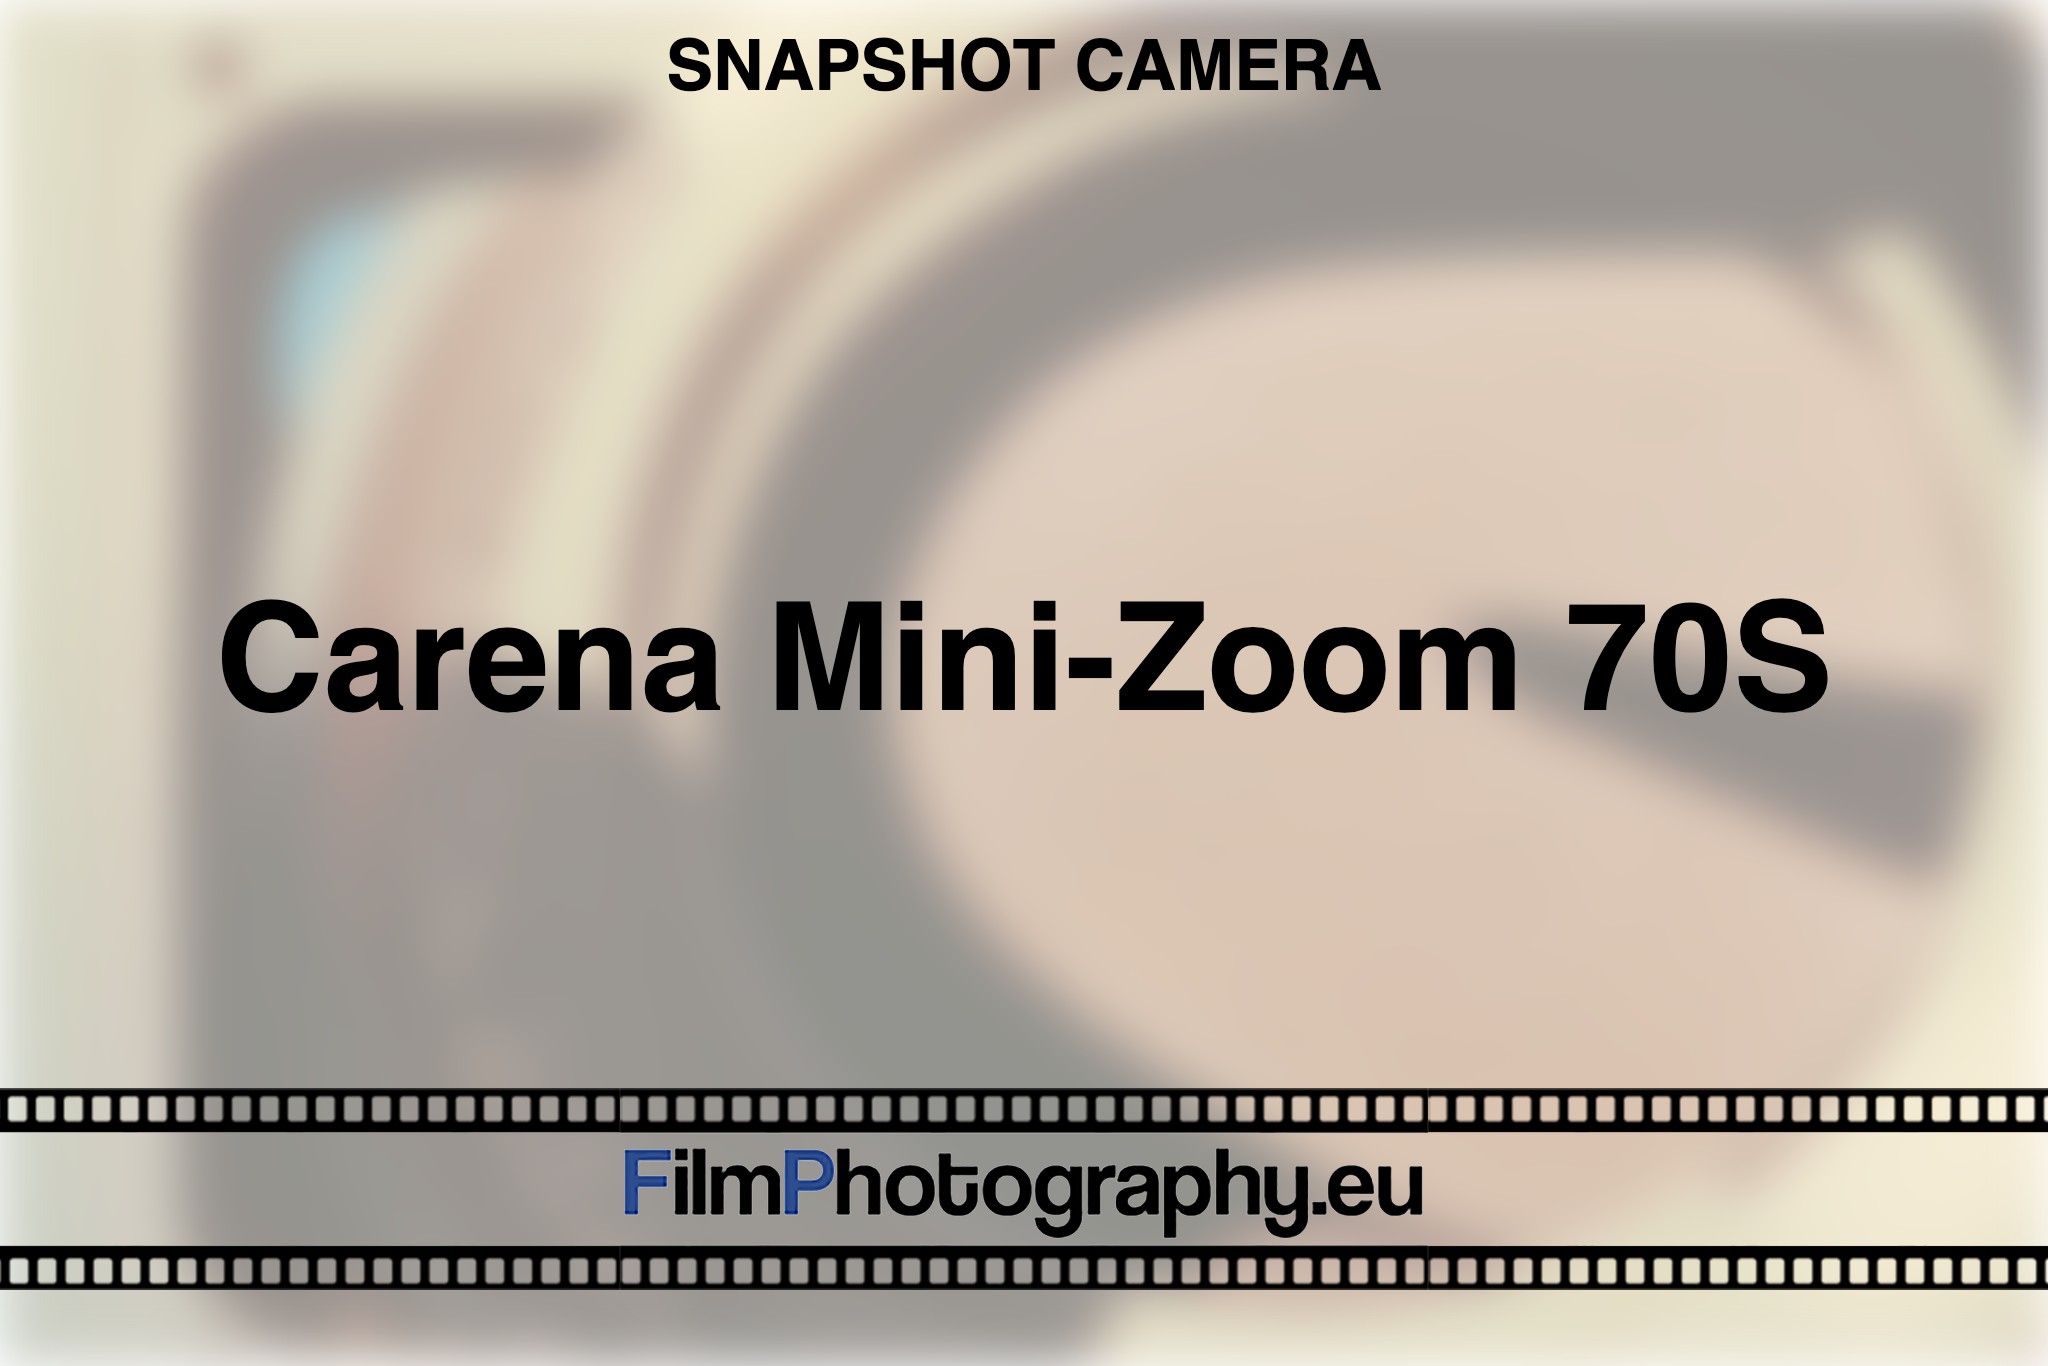 carena-mini-zoom-70s-snapshot-camera-bnv